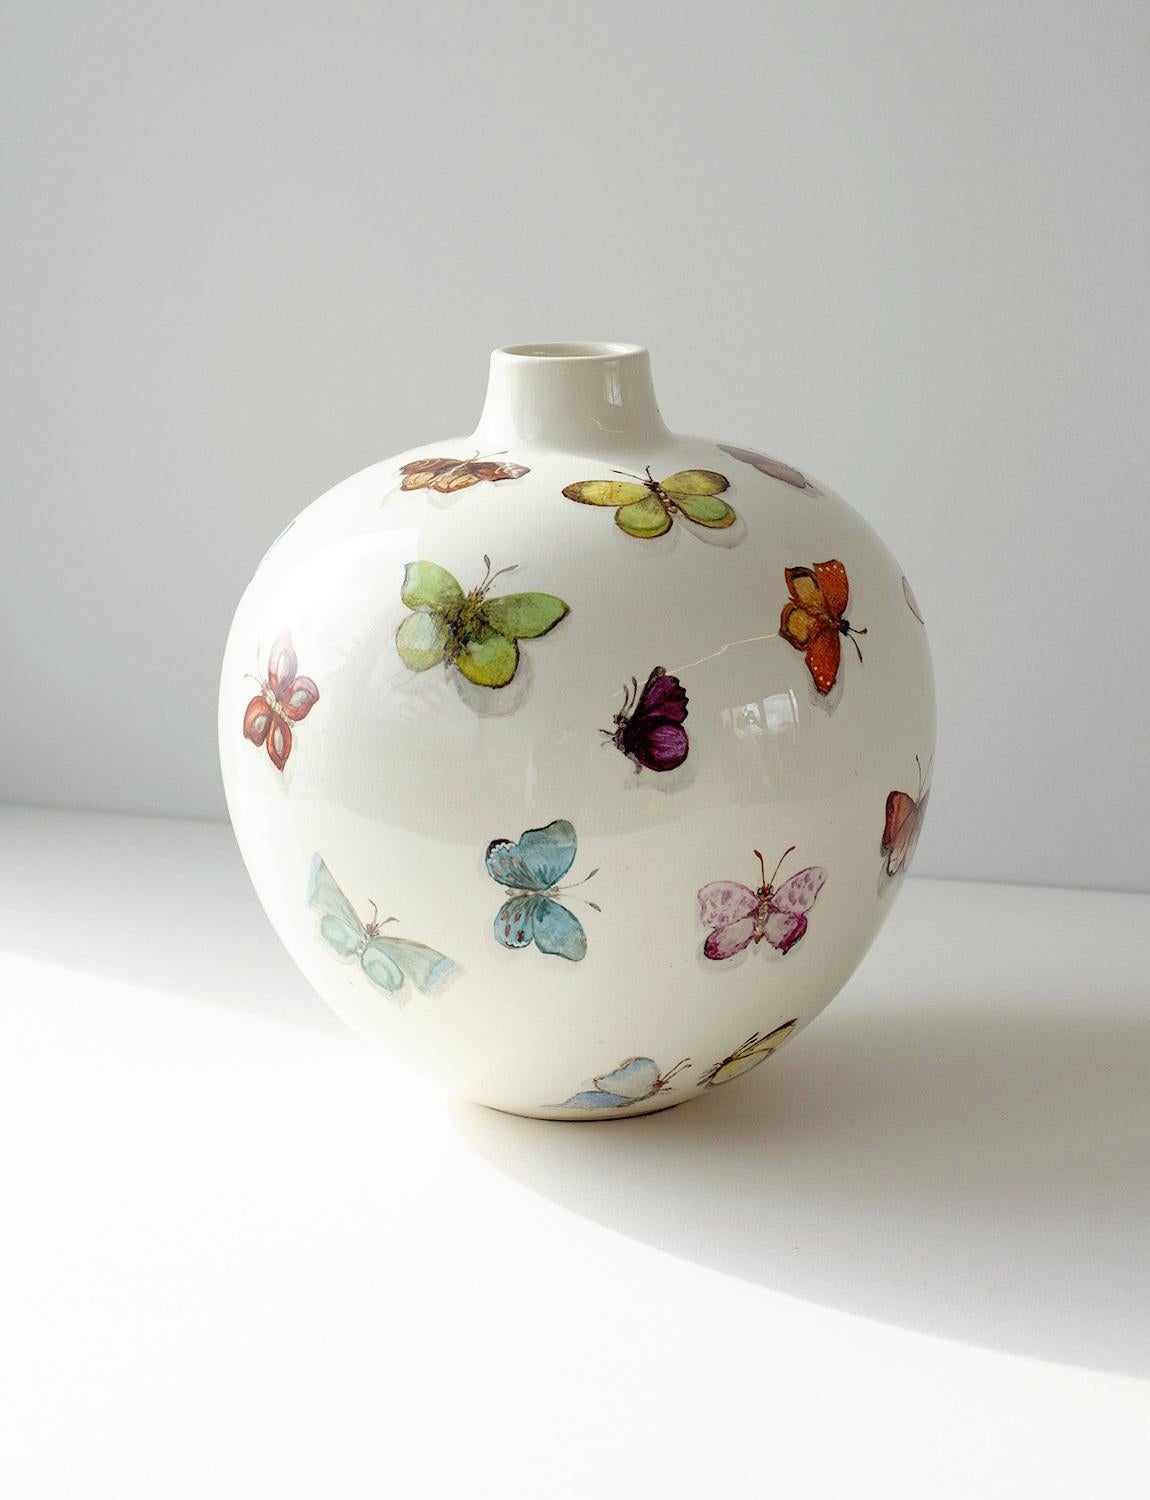 Ce vase papillon exceptionnellement rare et magnifique a été conçu par Guido Andlovitz pour la maison de céramique Società Ceramica Italiana, Lavenia, dont il était le directeur artistique dans les années 1930. Cette forme et ce style de vase